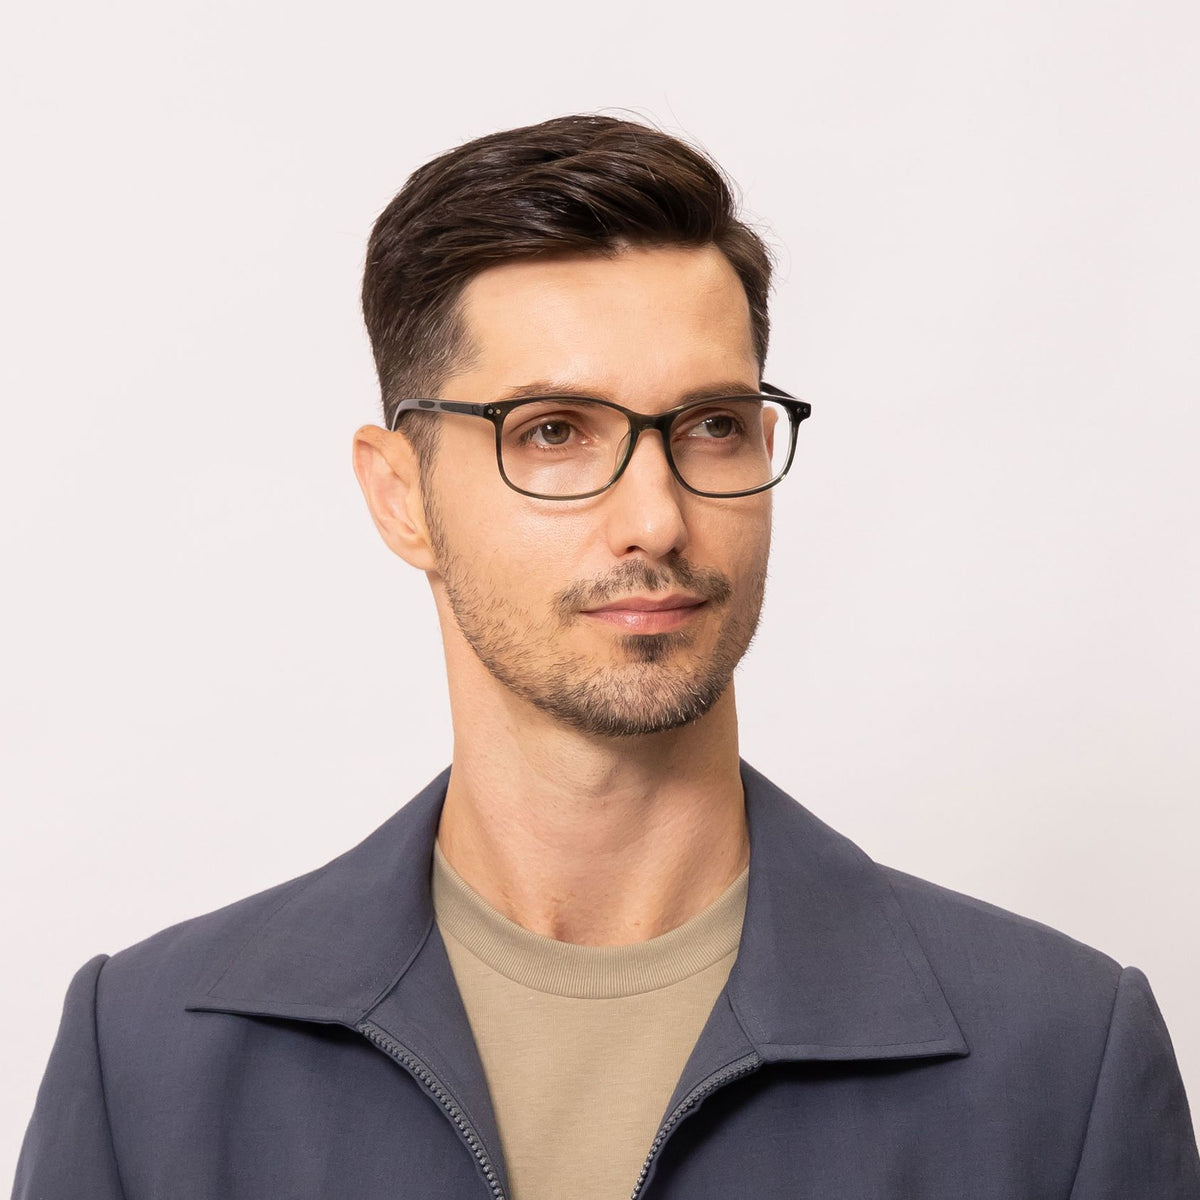 eon rectangle green eyeglasses frames for men side view